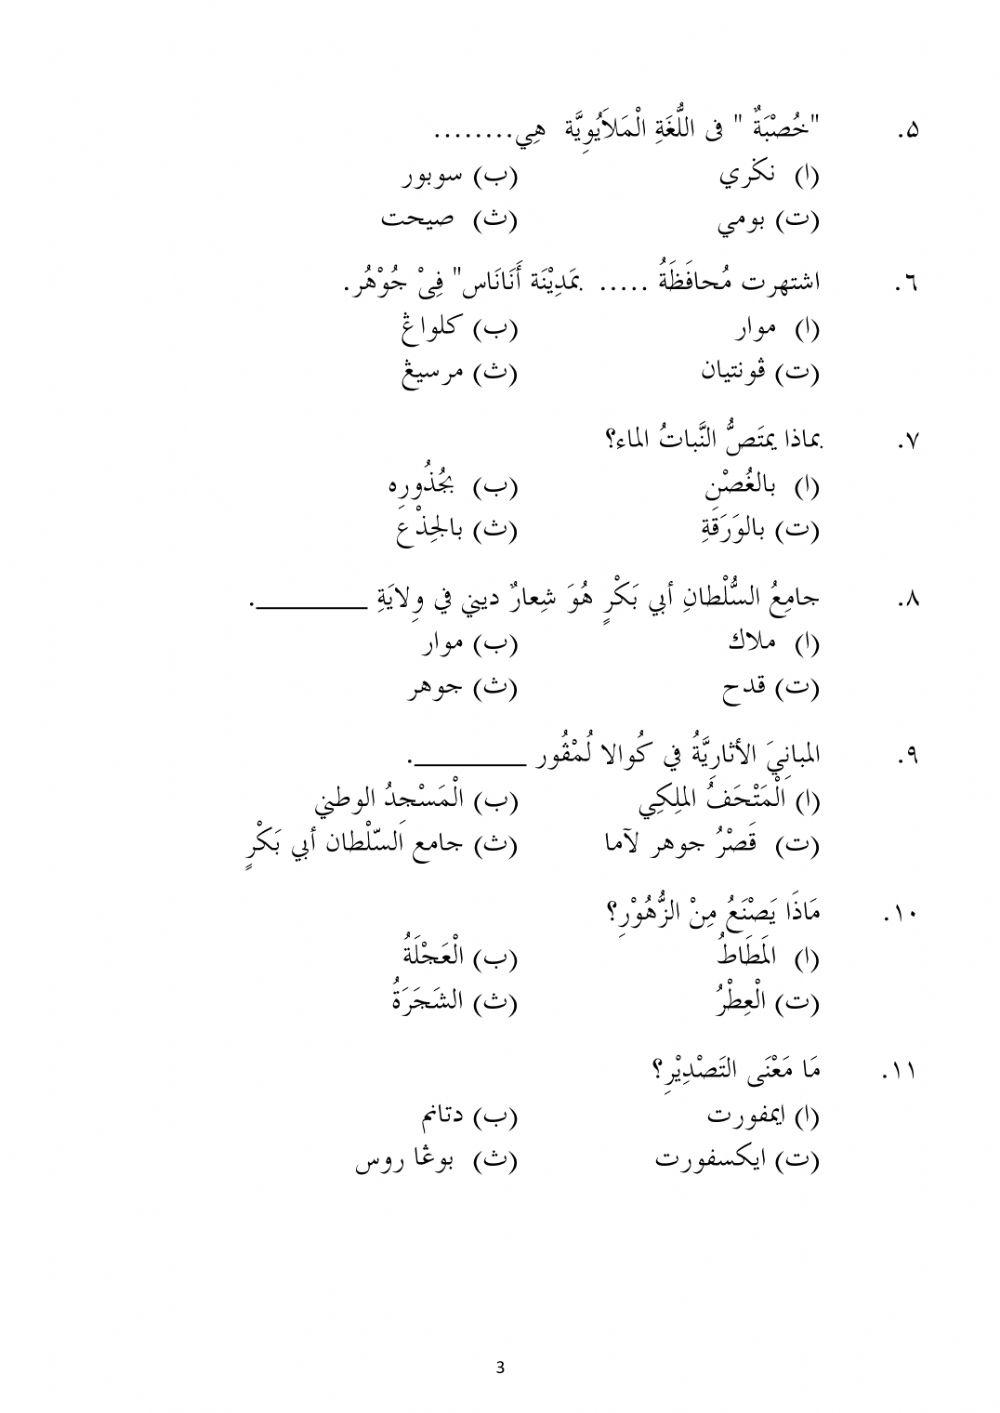 Latihan bahasa arab sdea 2020